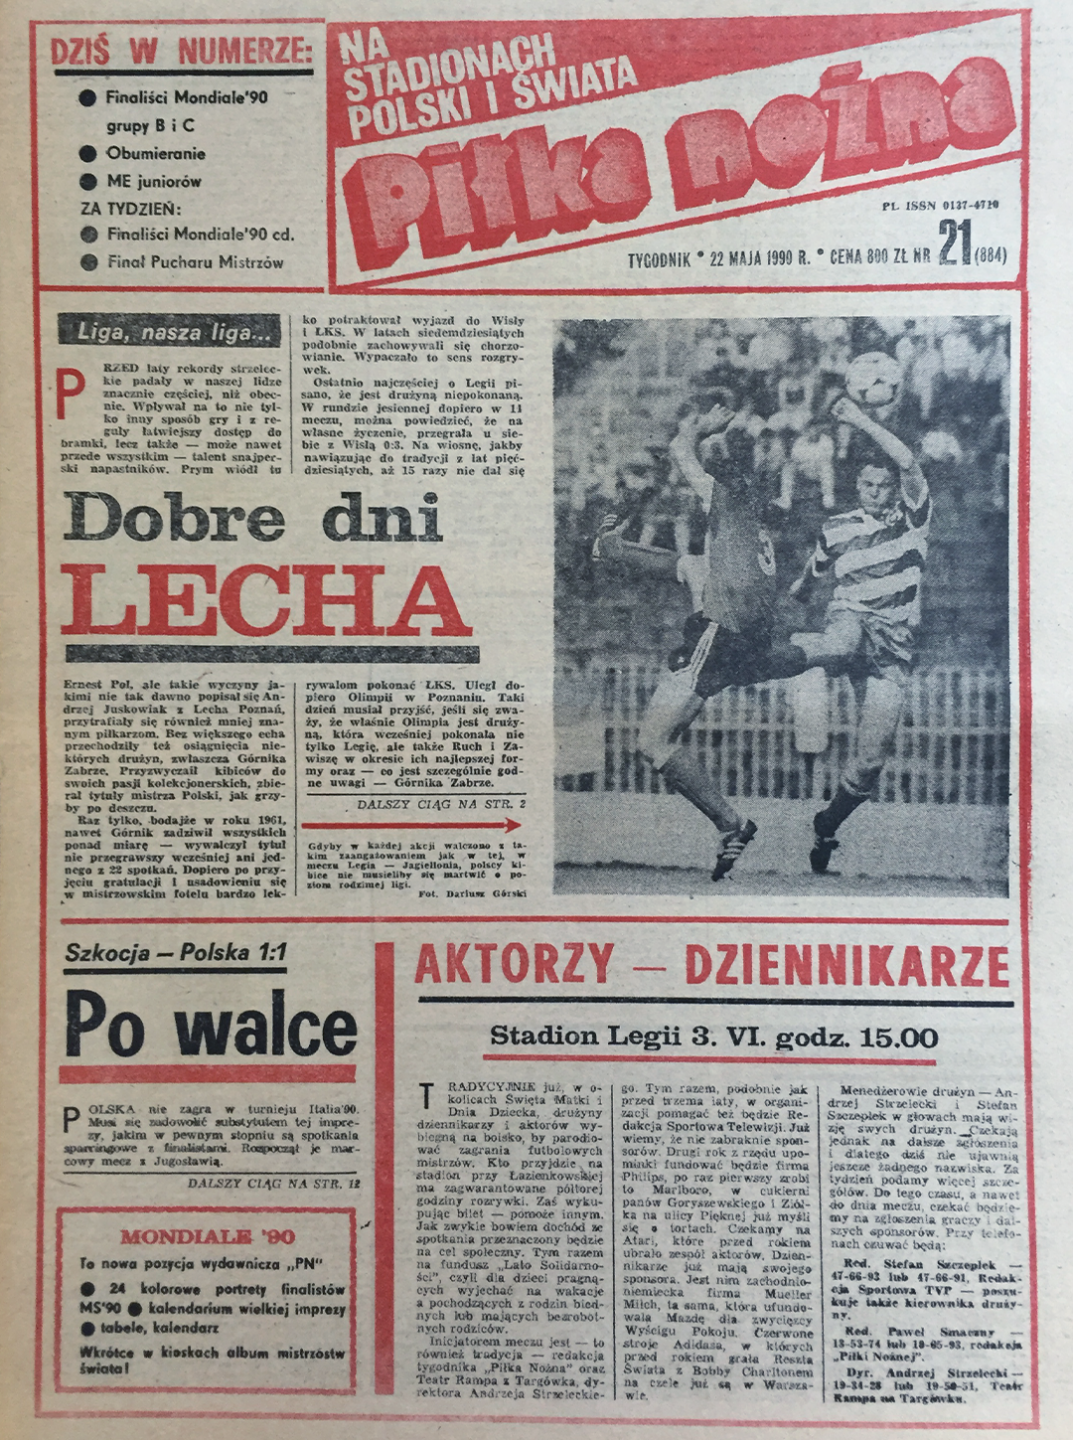 Okładka piłki nożnej po meczu Szkocja - Polska 1:1 (19.05.1990) 